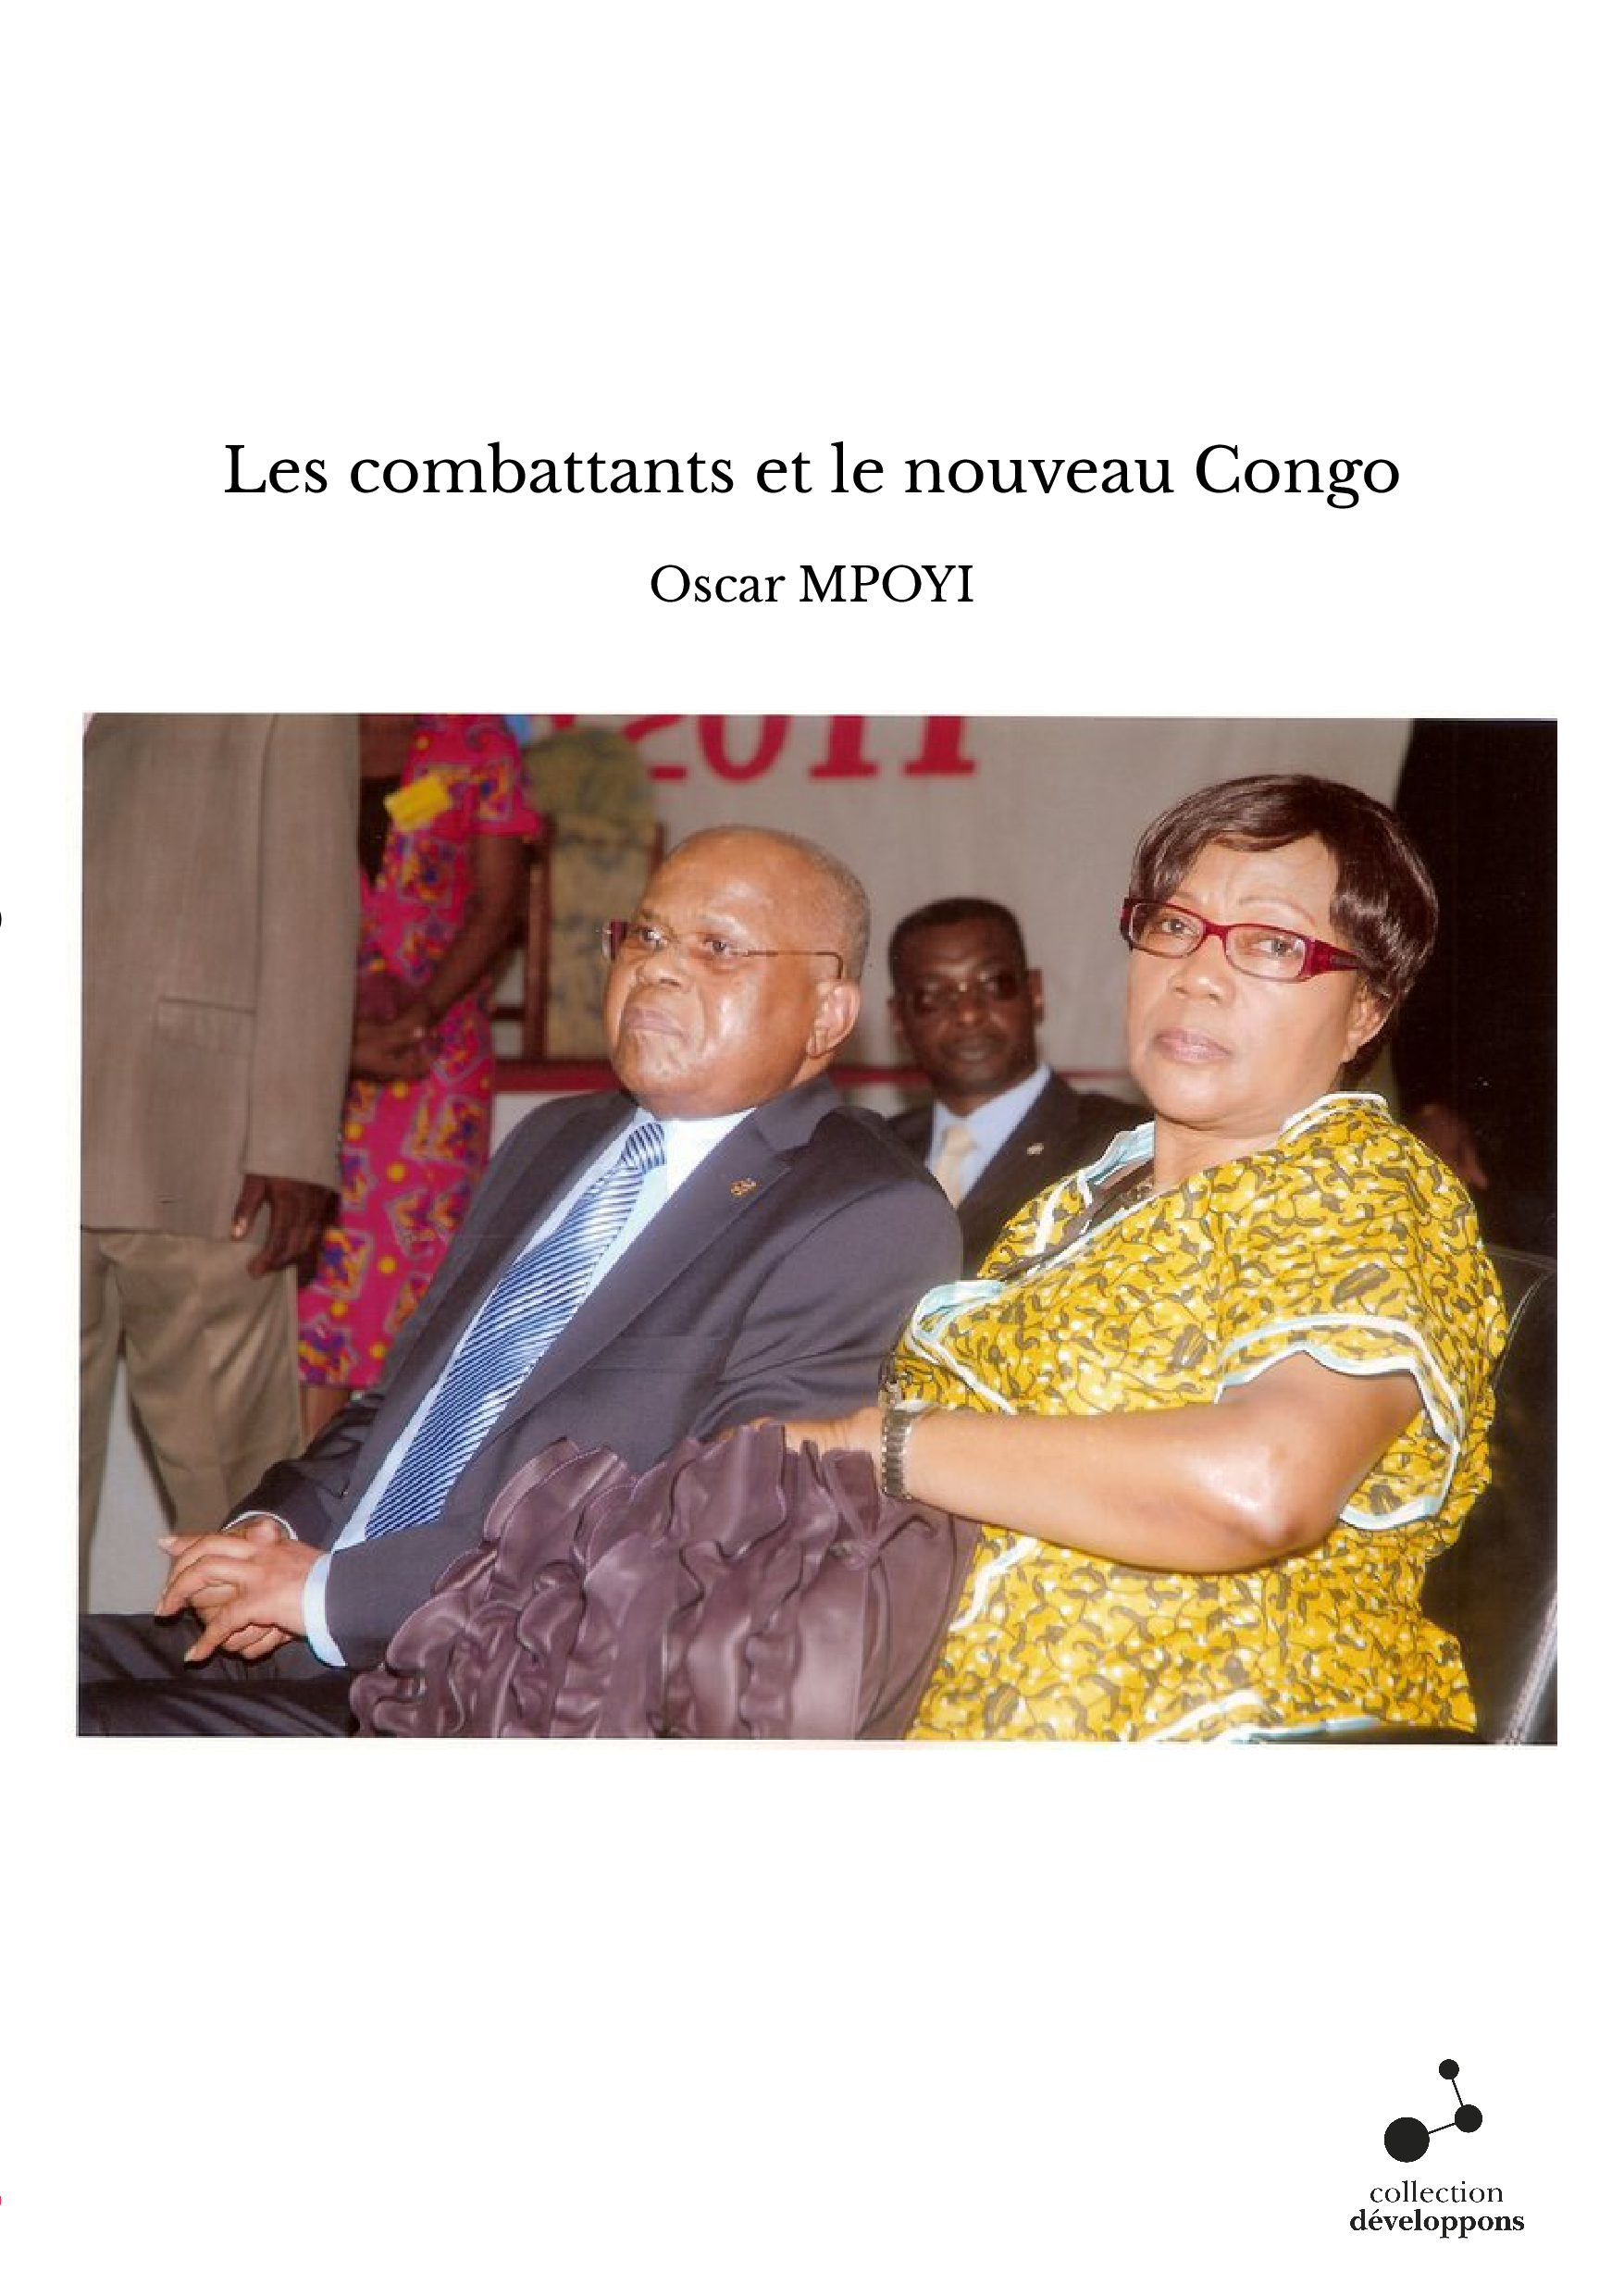 Les combattants et le nouveau Congo